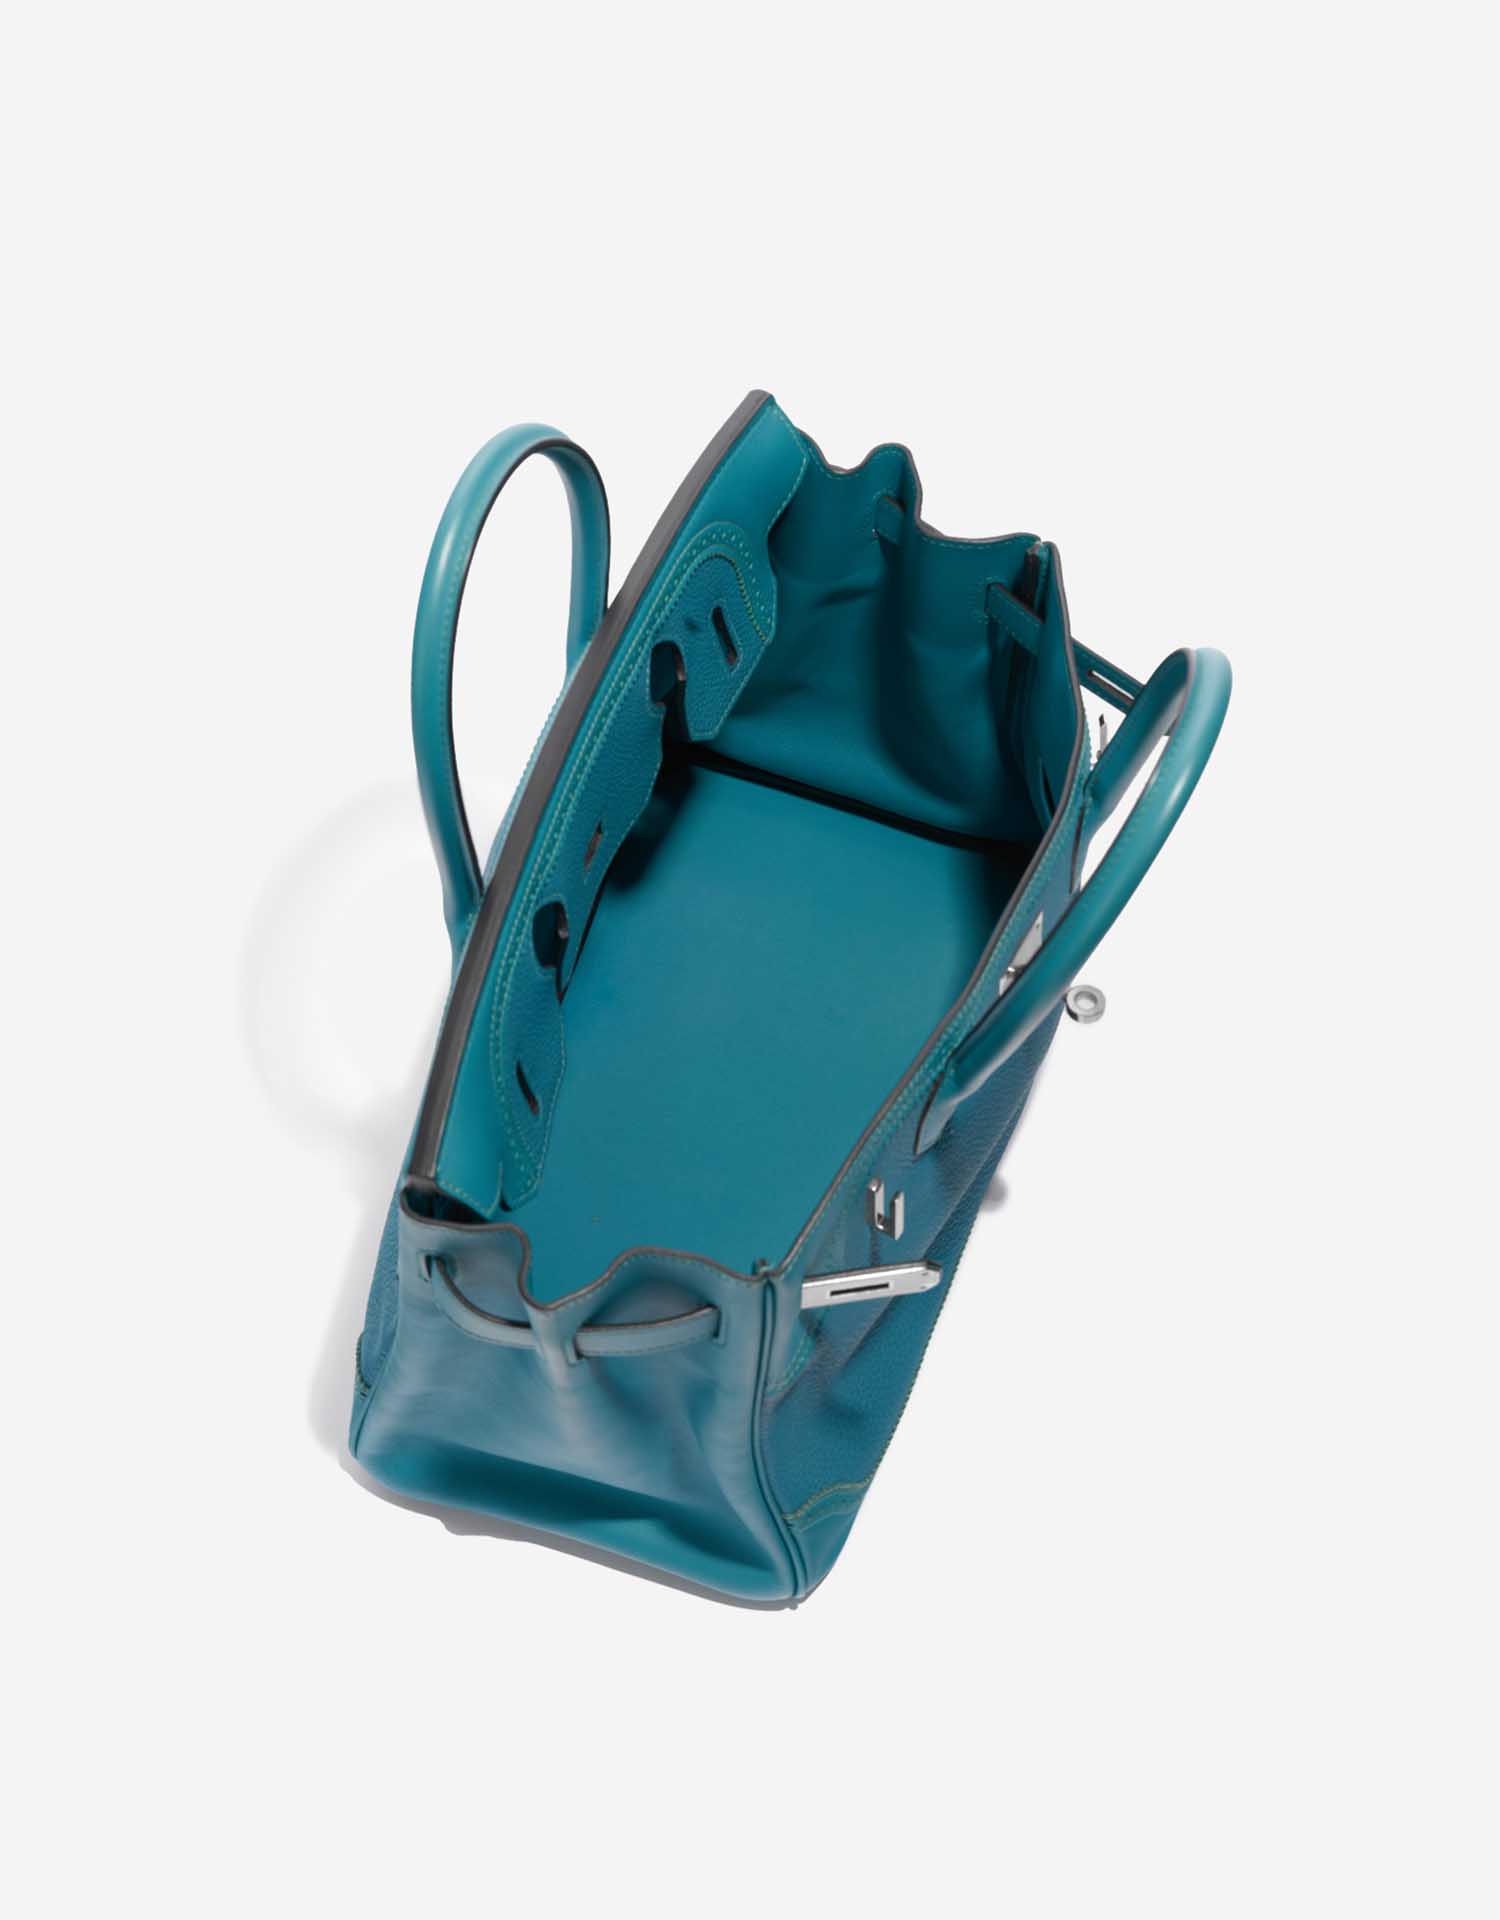 Hermès Birkin 30 Turquoise Inside  | Sell your designer bag on Saclab.com